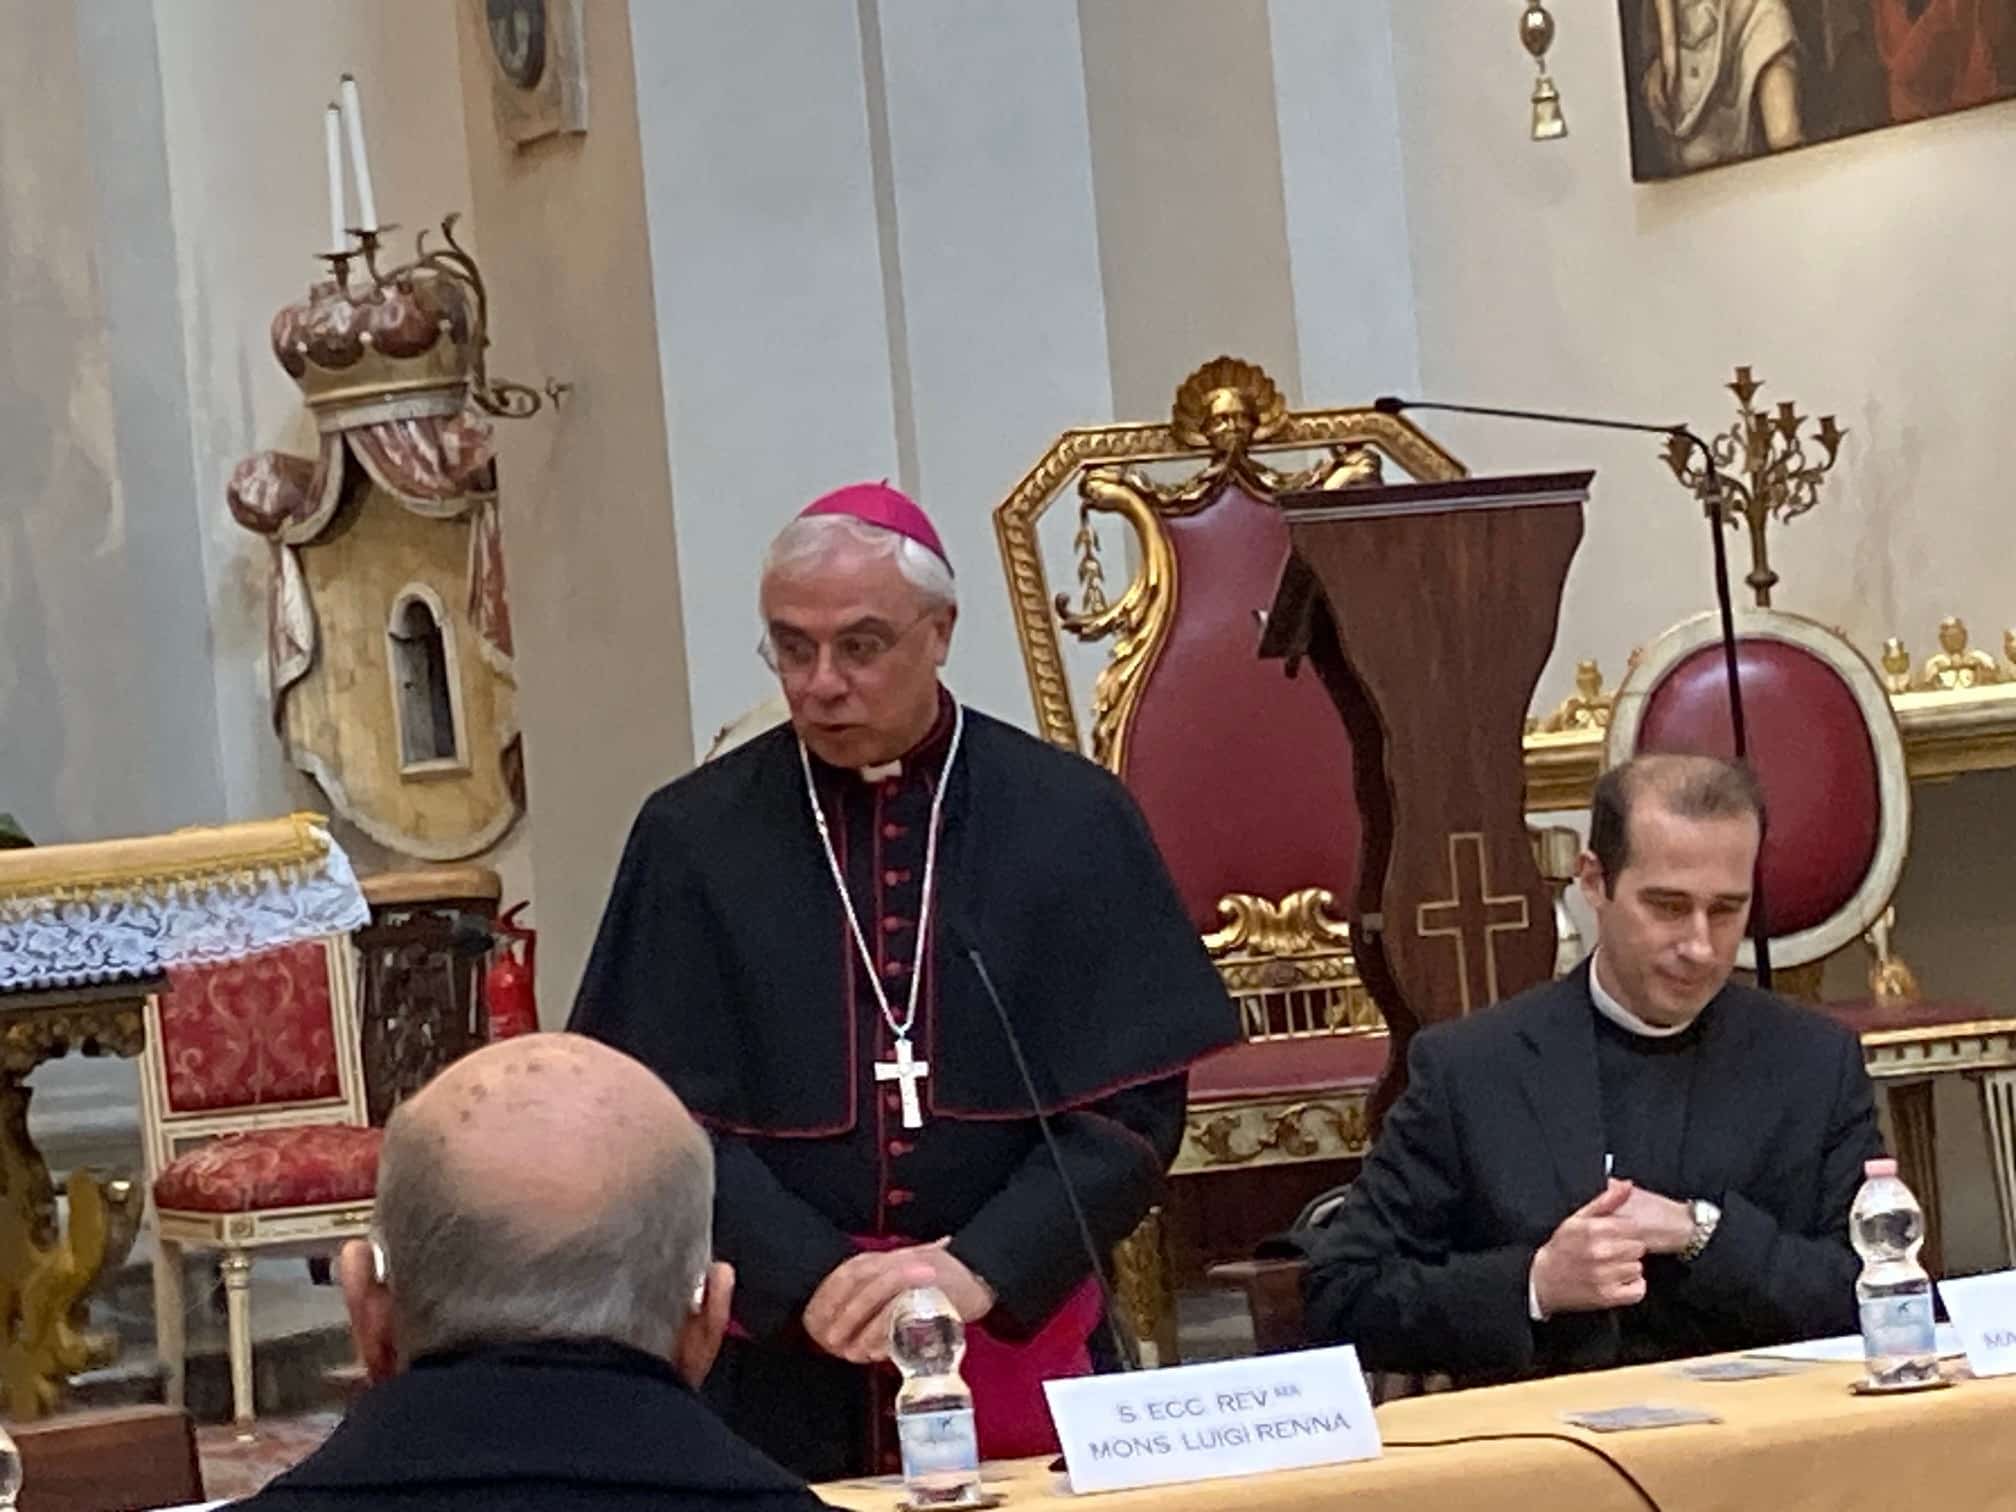 Festa di Sant’Agata, l’intervista esclusiva all’Arcivescovo Renna: “È genuina la fede del popolo del sacco”